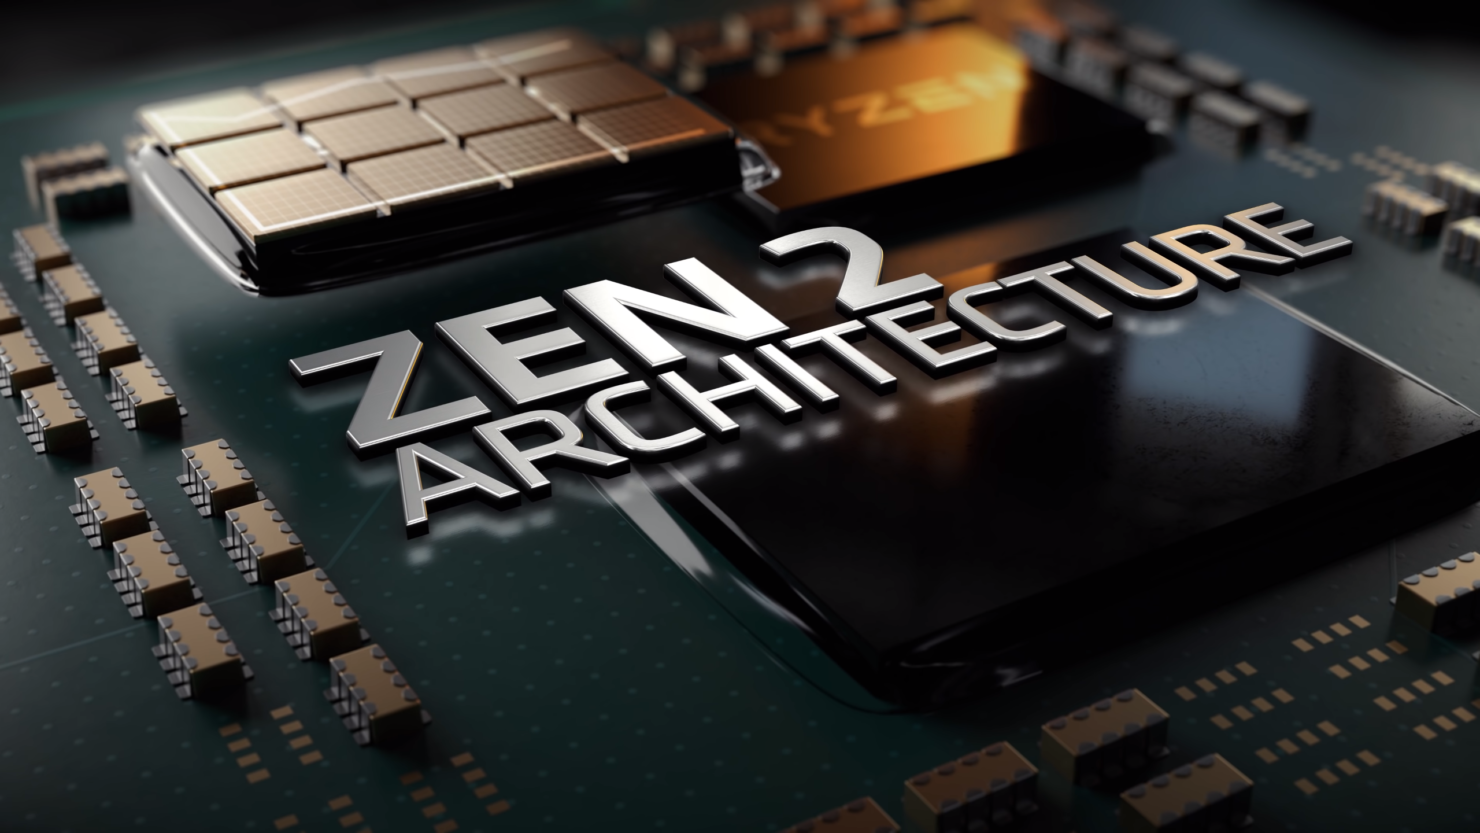 AMD-Ryzen-3000-CPU-Official-Video_5-1480x833